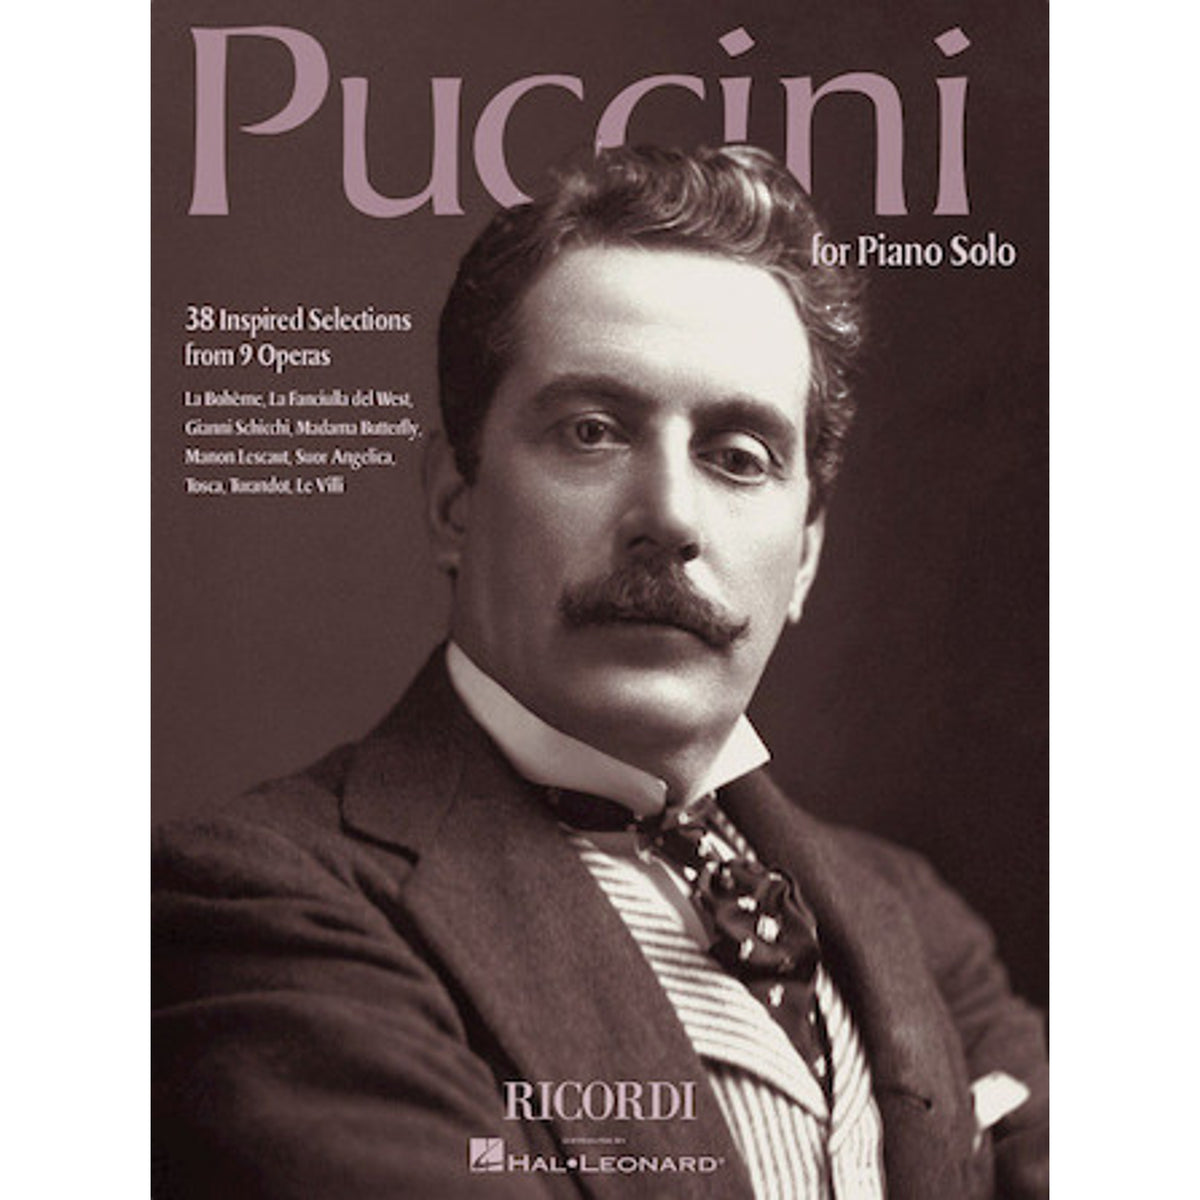 Puccini for Piano Solo